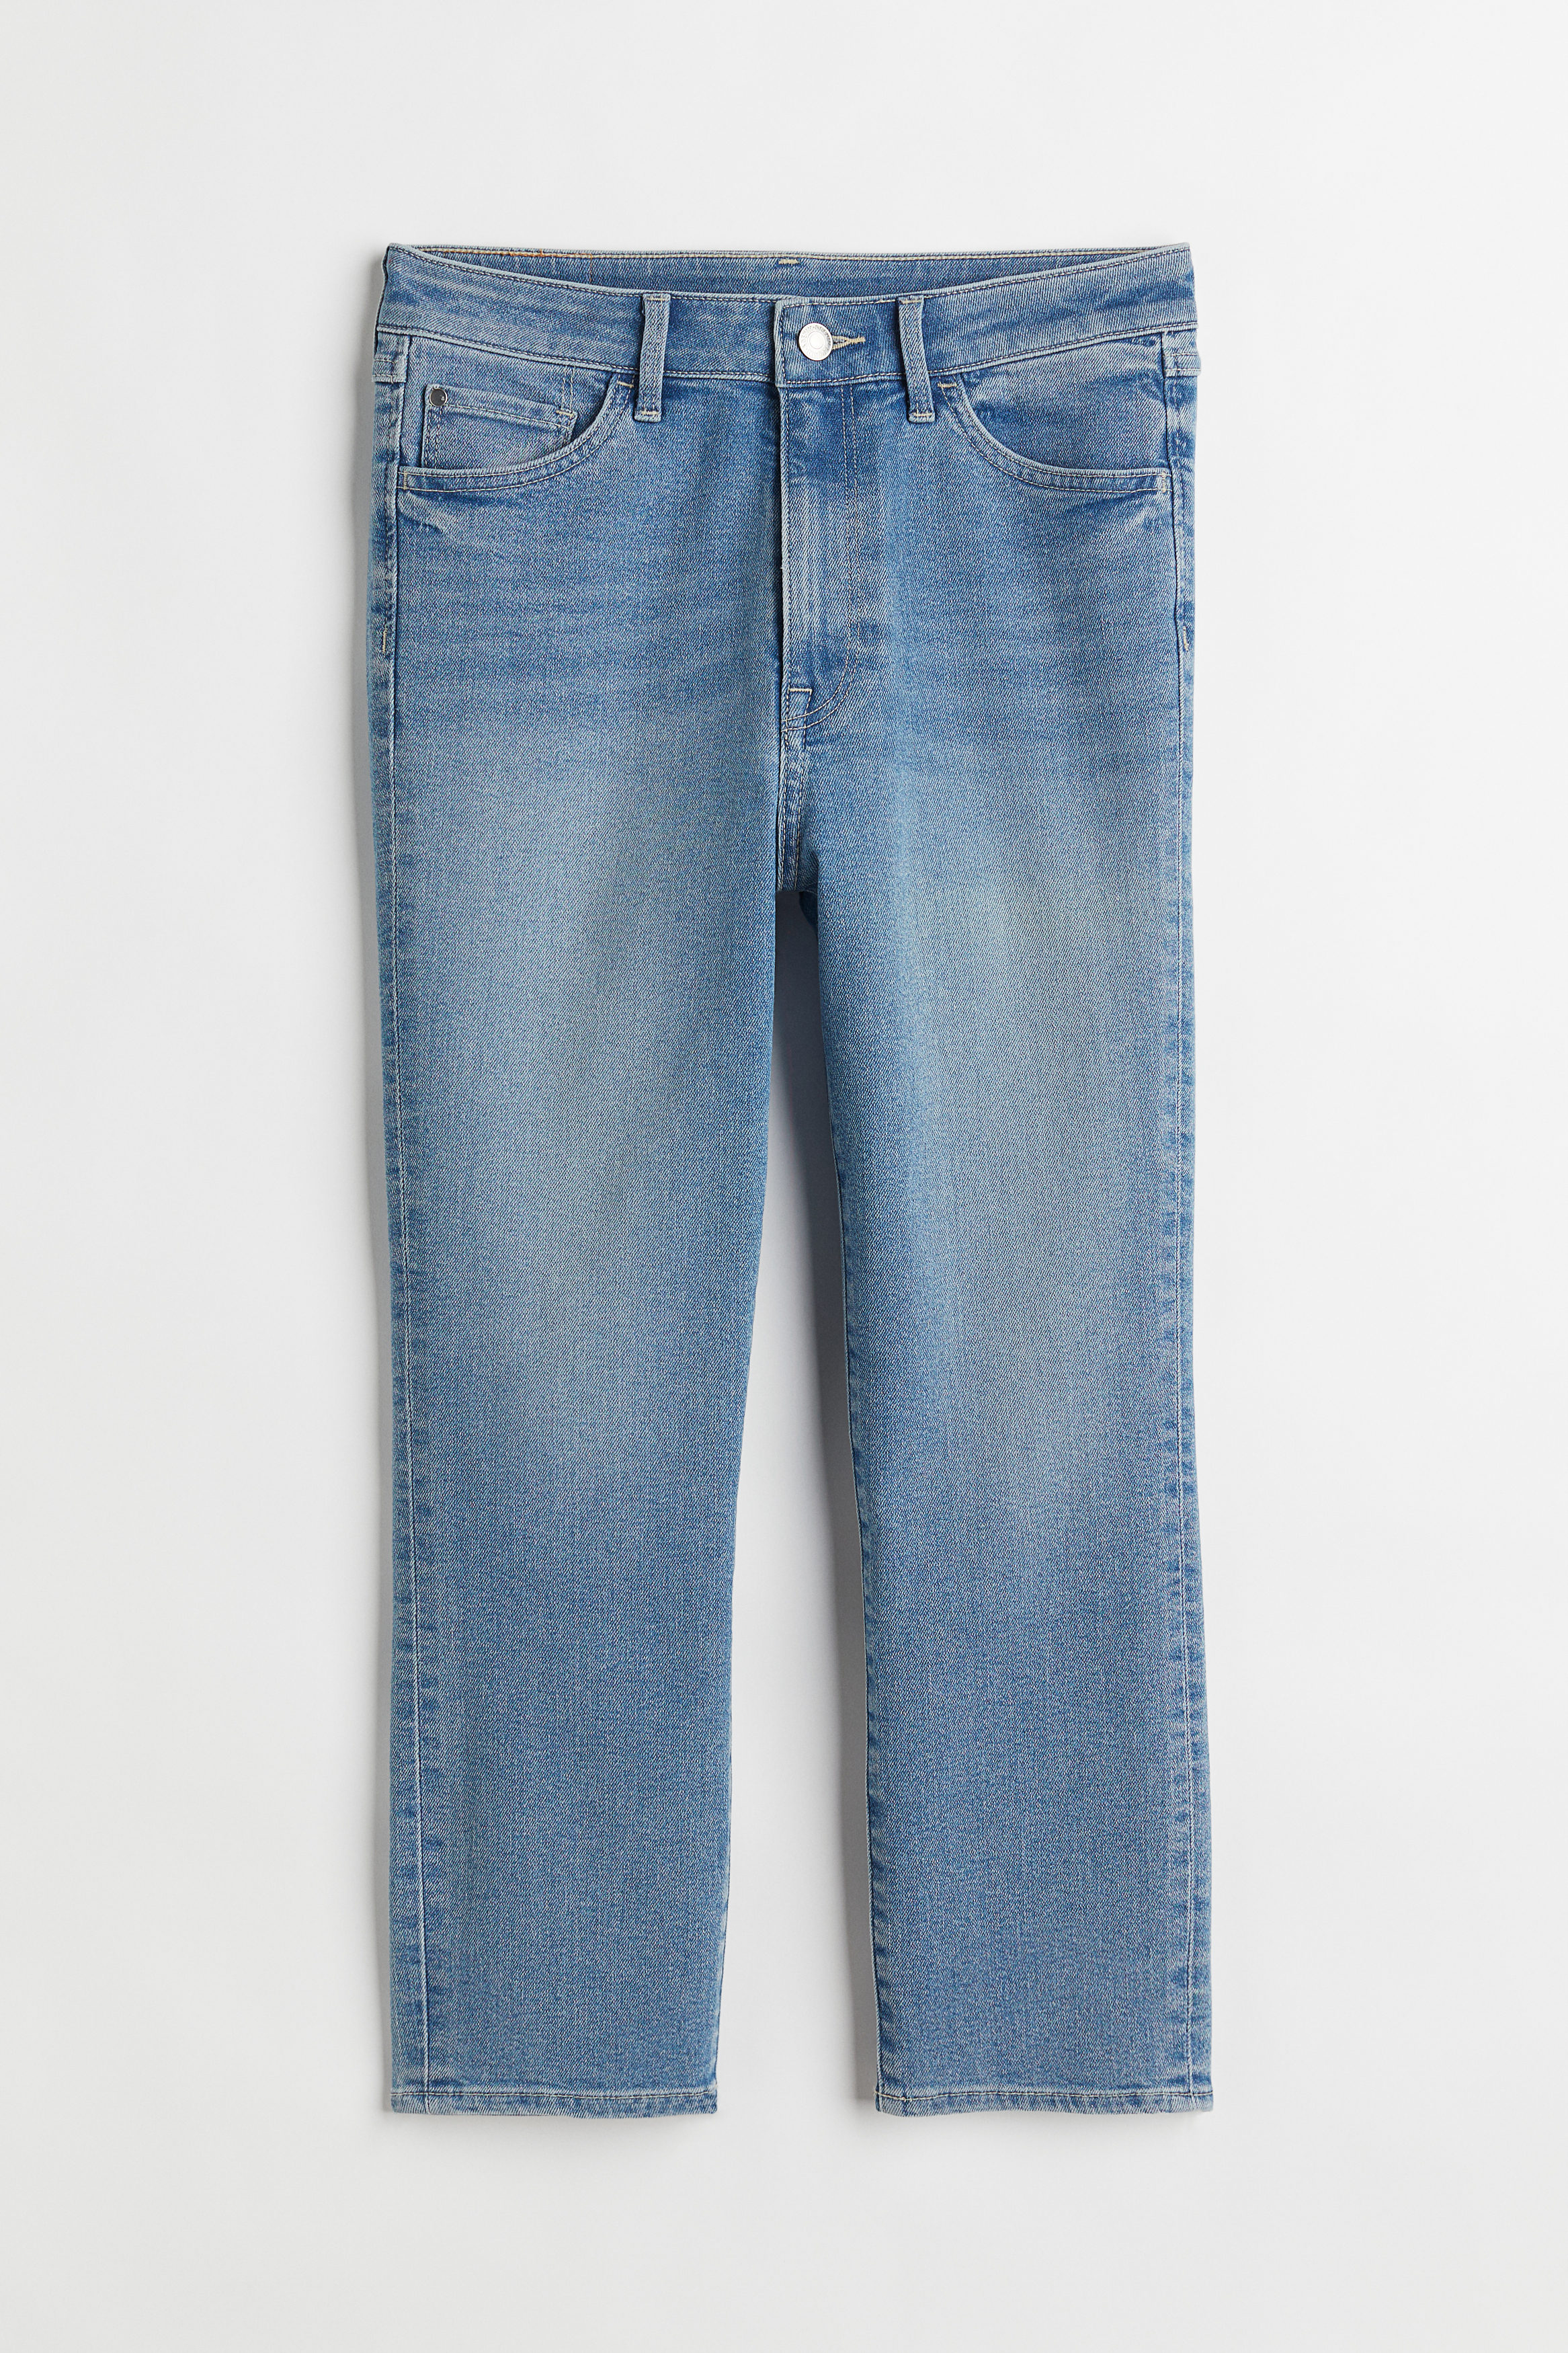 Billede af H&M Skinny High Cropped Jeans Denimblå, jeans. Farve: Denim blue 009 I størrelse 34